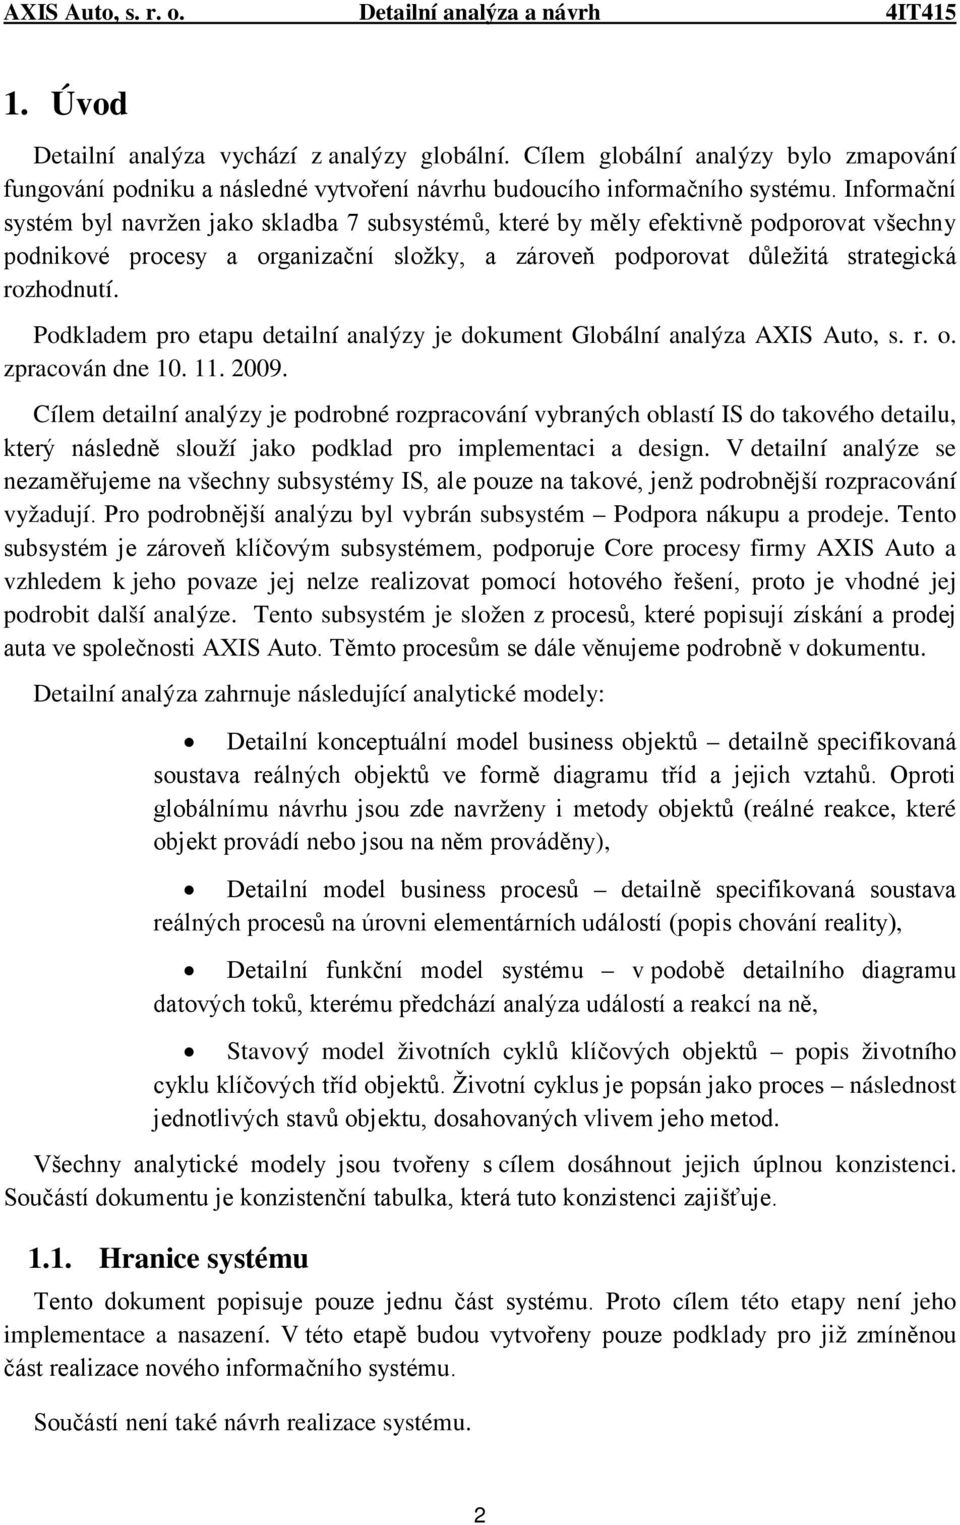 Podkladem pro etapu detailní analýzy je dokument Globální analýza AXIS Auto, s. r. o. zpracován dne 10. 11. 2009.